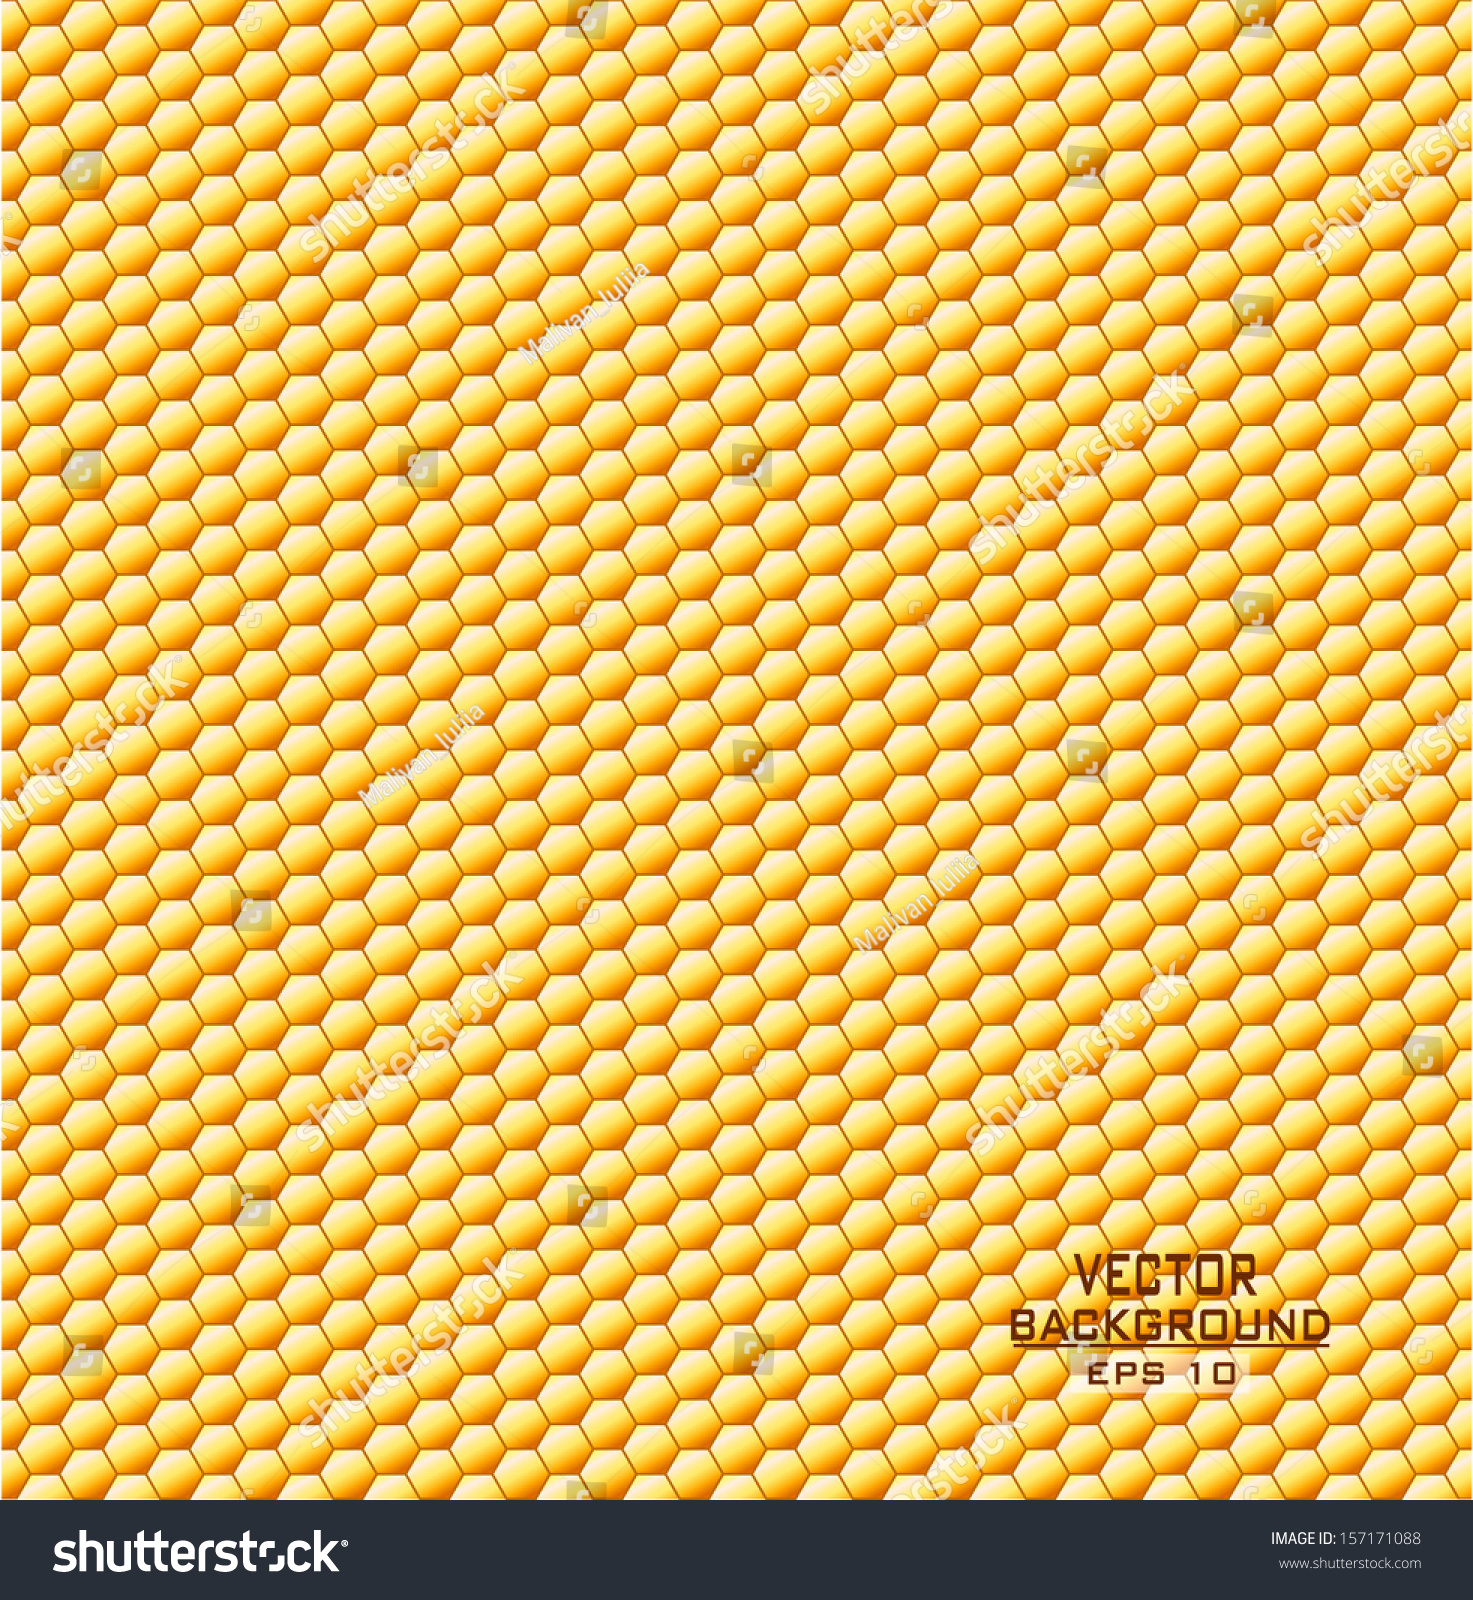 Honeycombs, Background Vector - 157171088 : Shutterstock